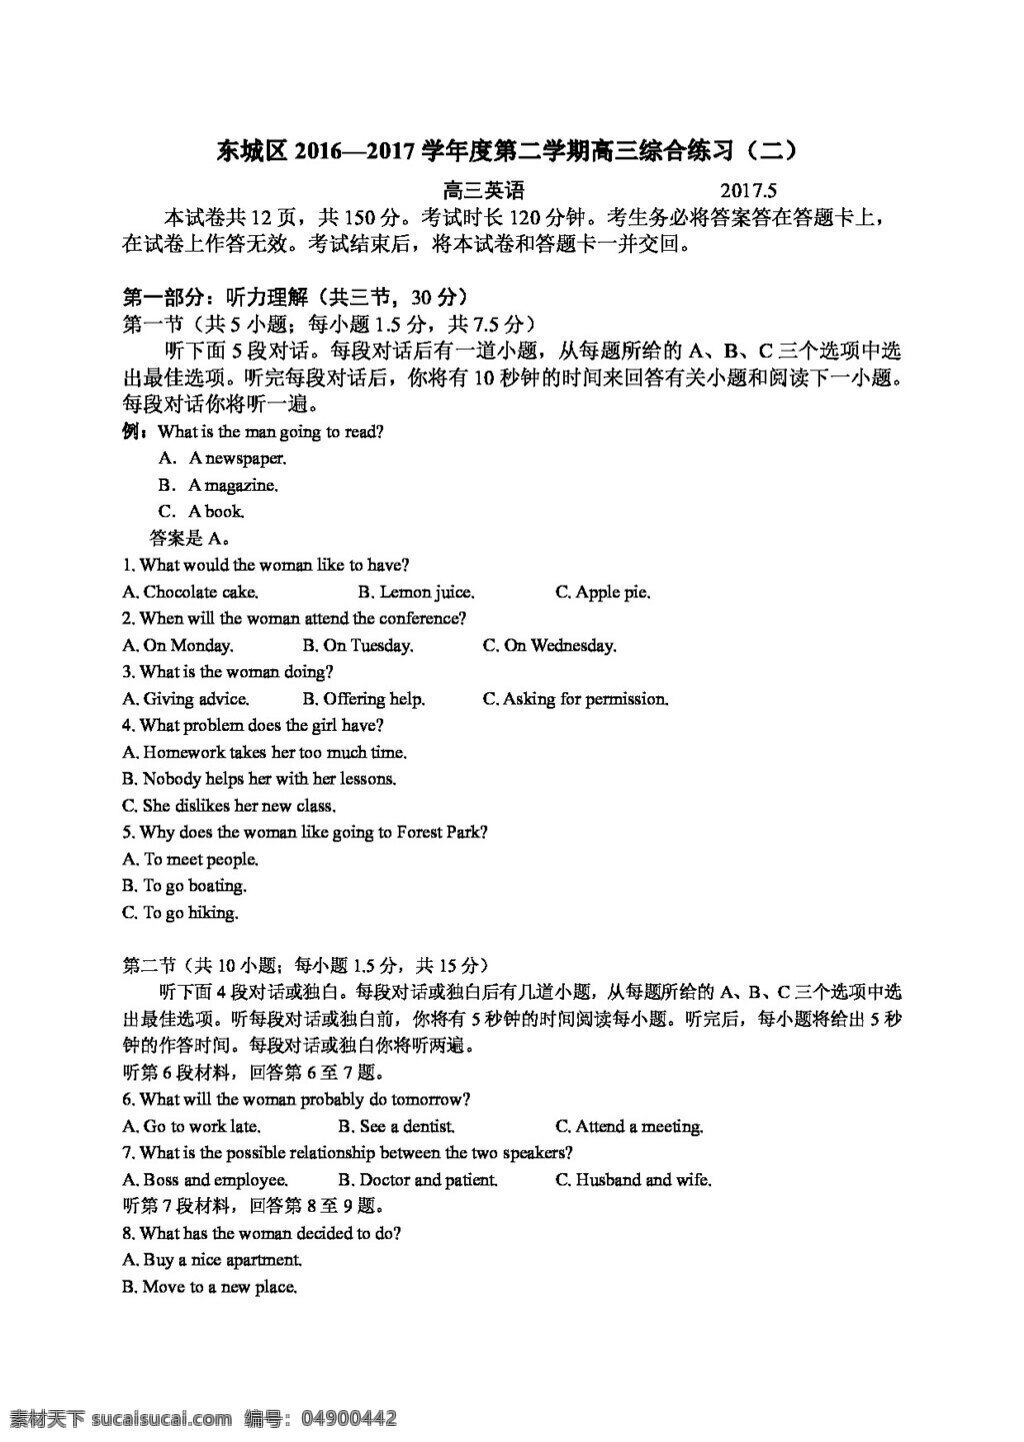 高考 专区 英语 北京市 东城区 高三 月 试题 高考专区 人教版 试卷